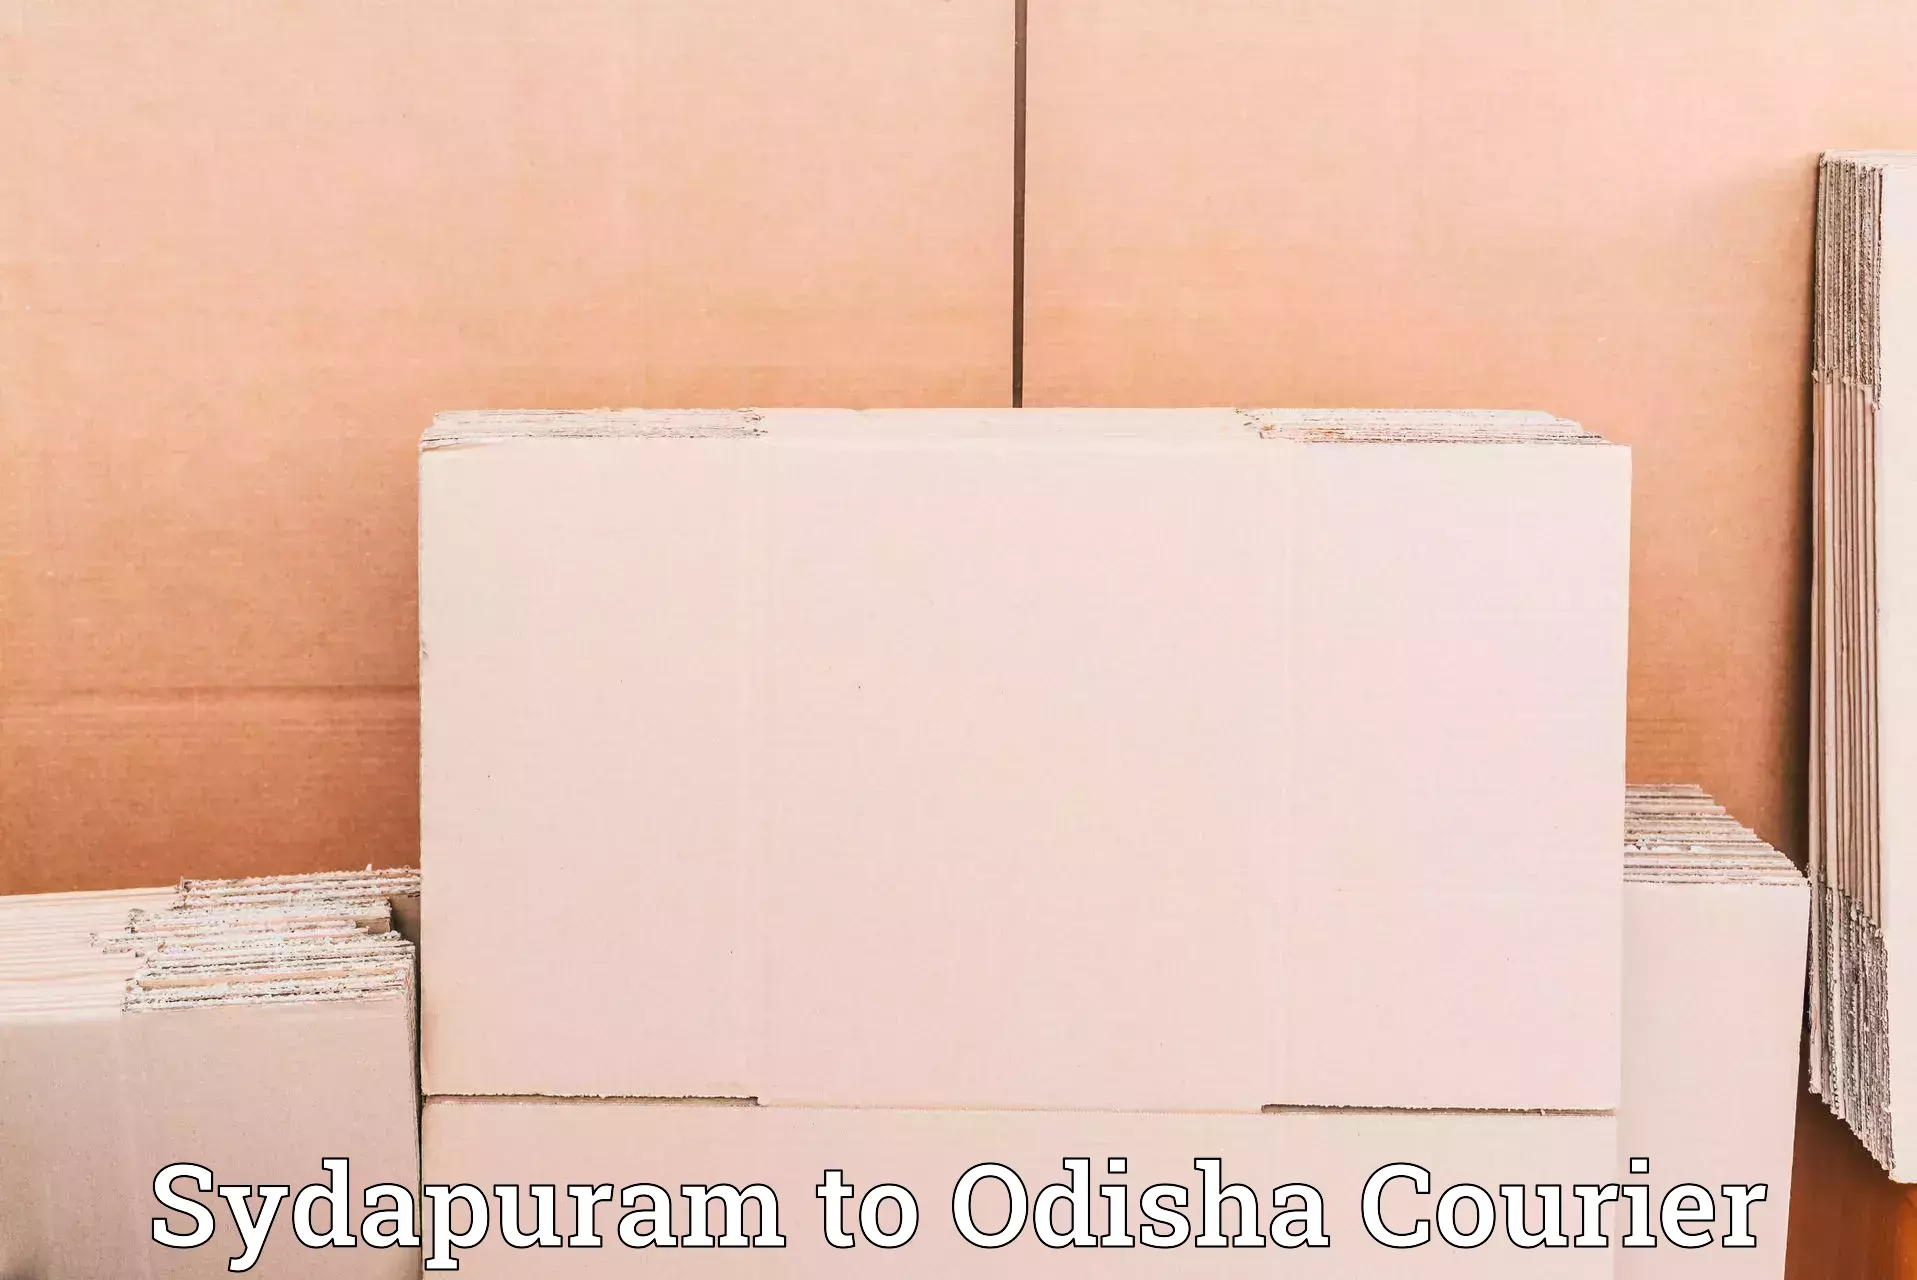 Premium courier solutions Sydapuram to Loisingha